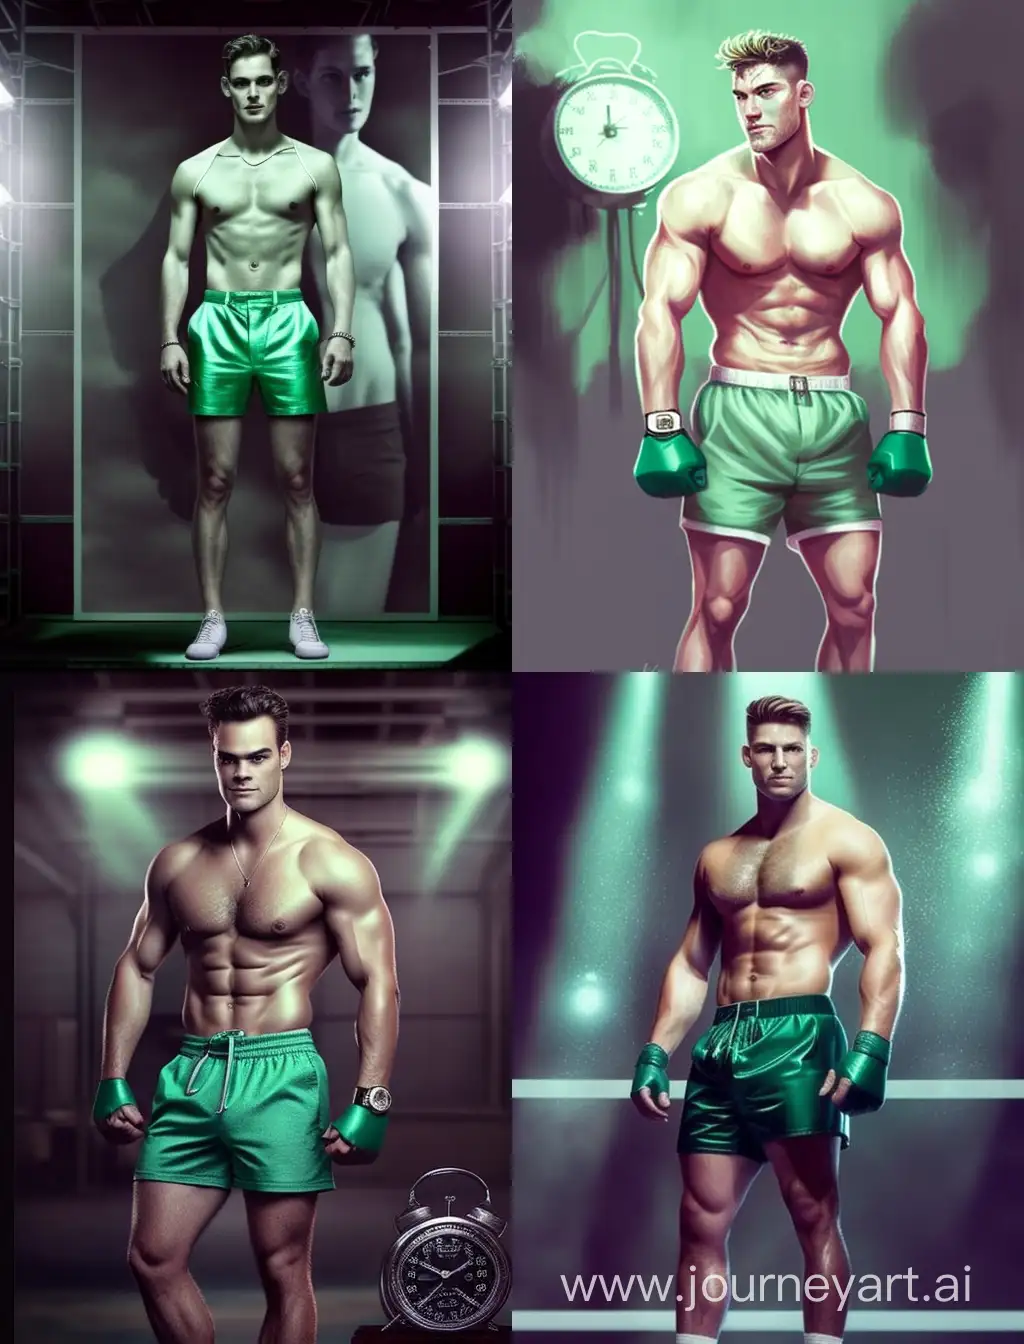 Athletic-European-Boxer-in-Green-Velvet-Jacket-on-Boxing-Ring